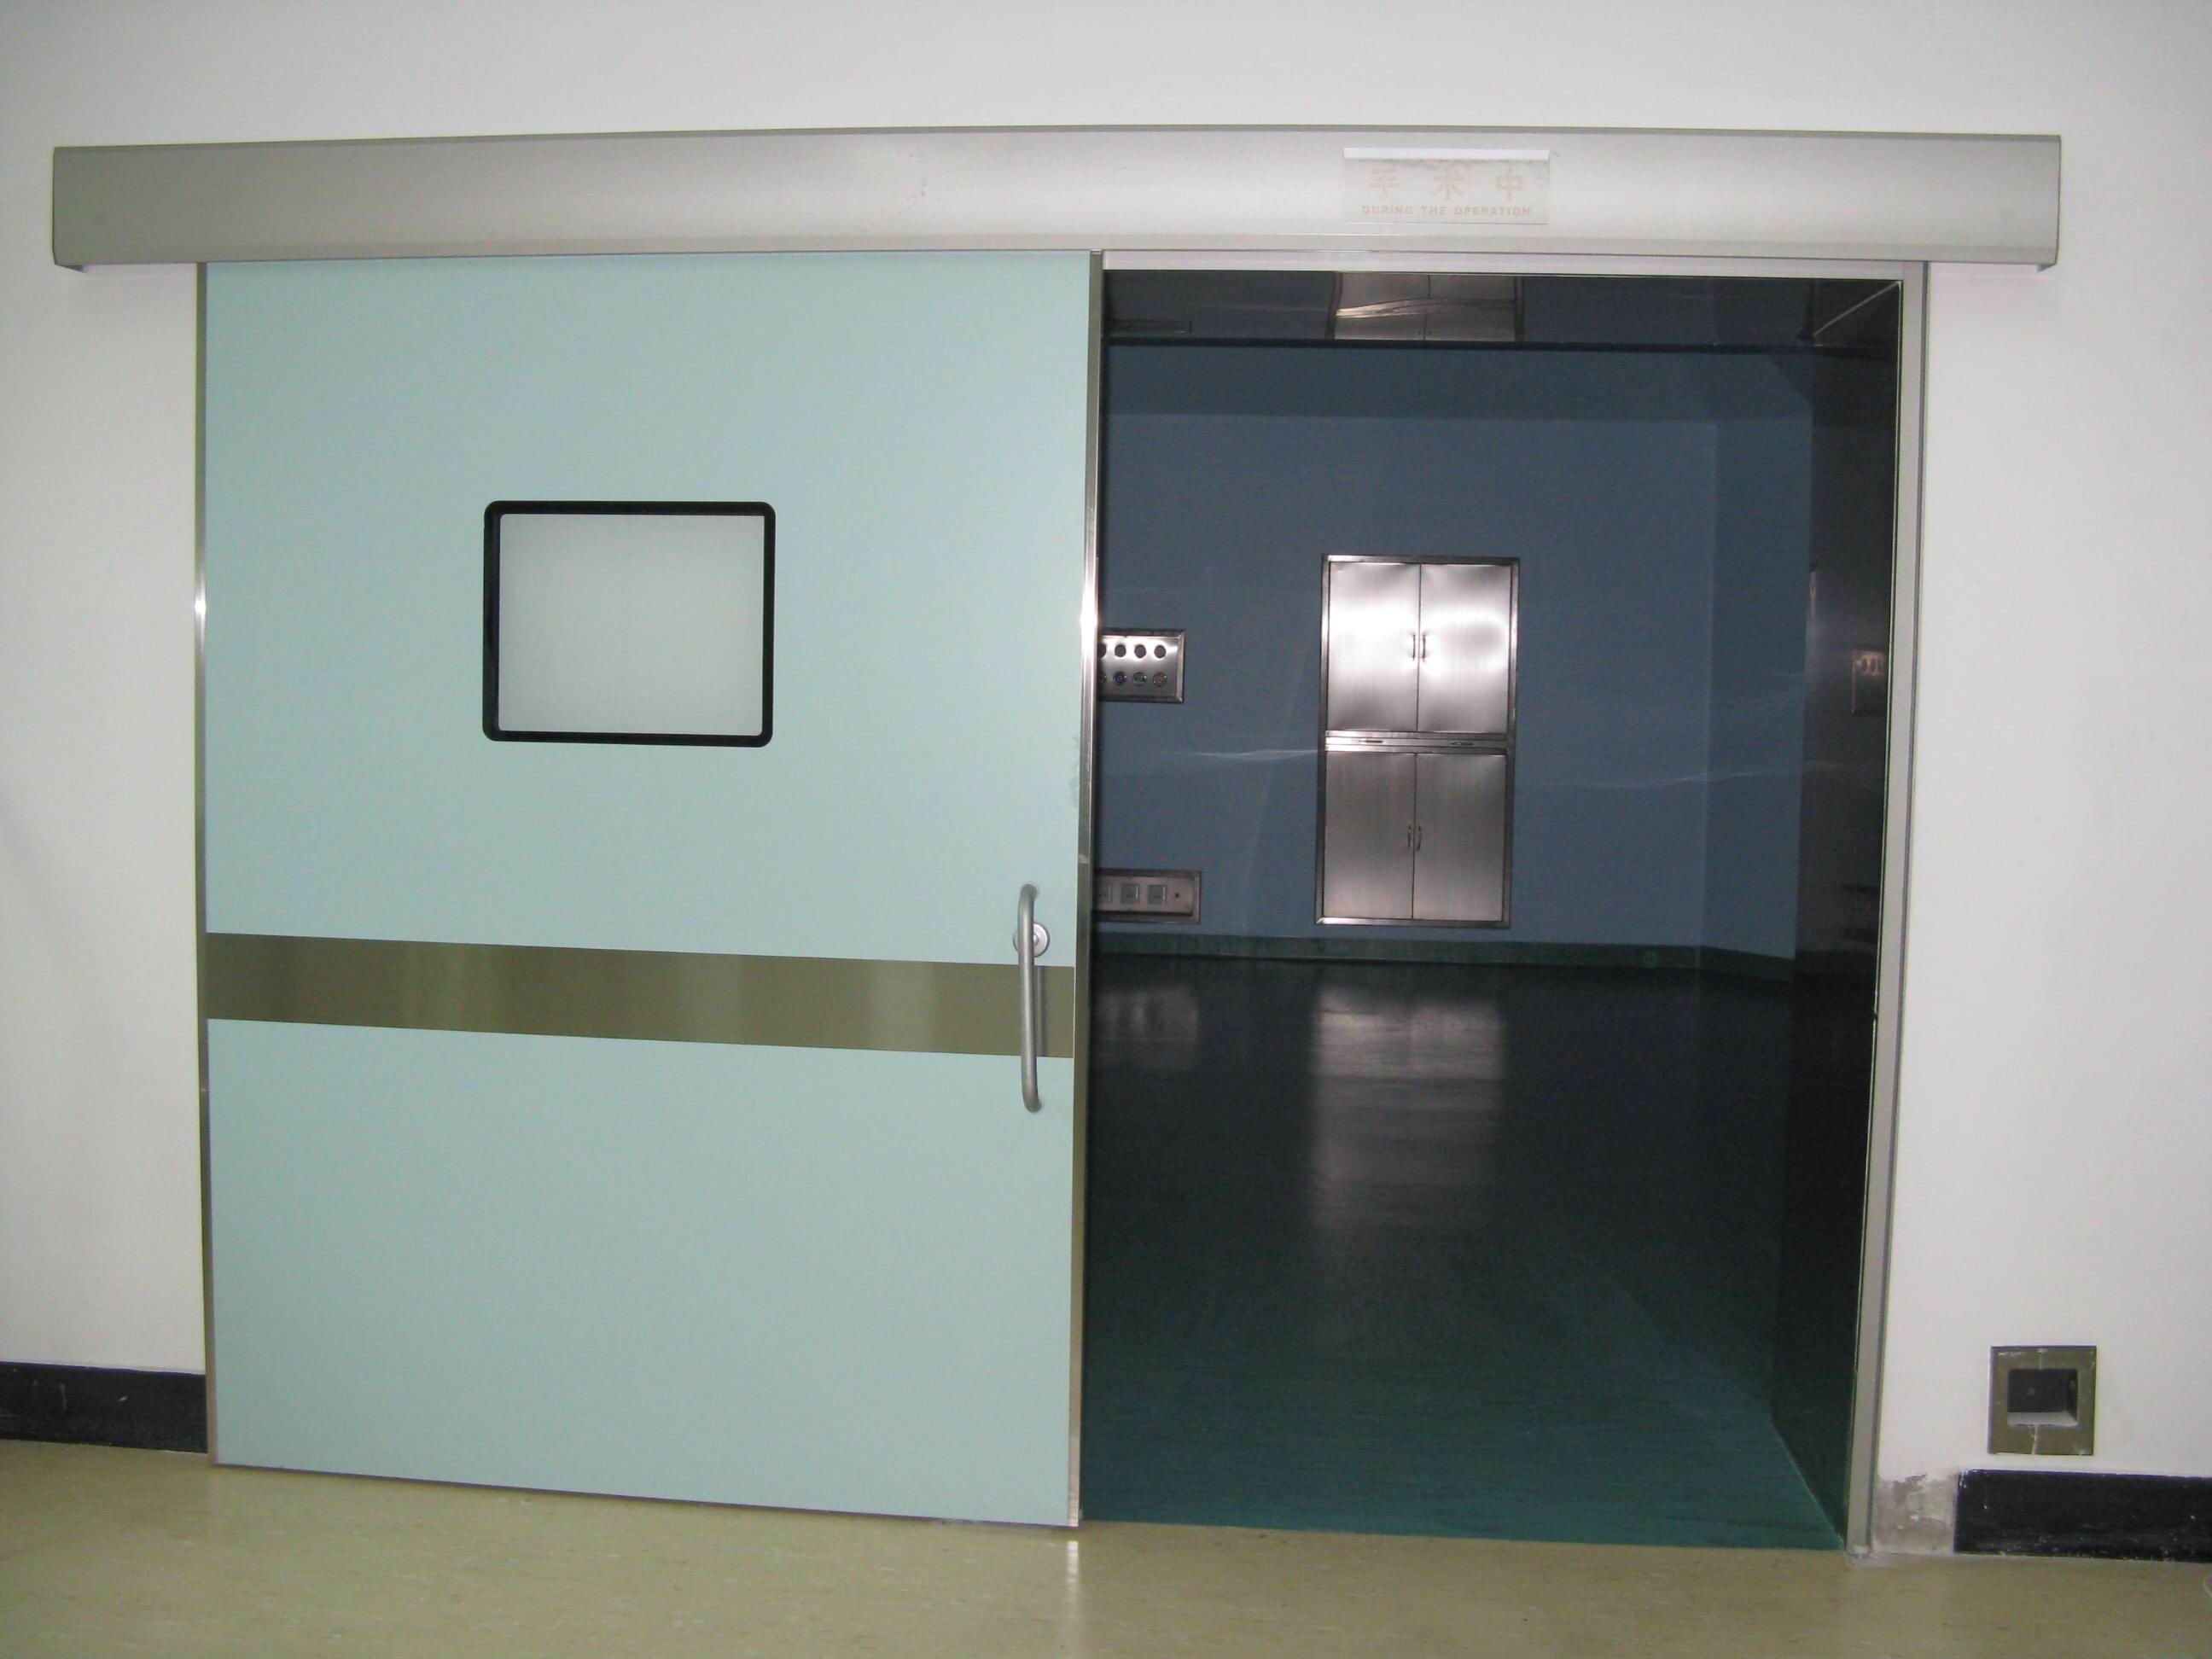 Operation Room Door